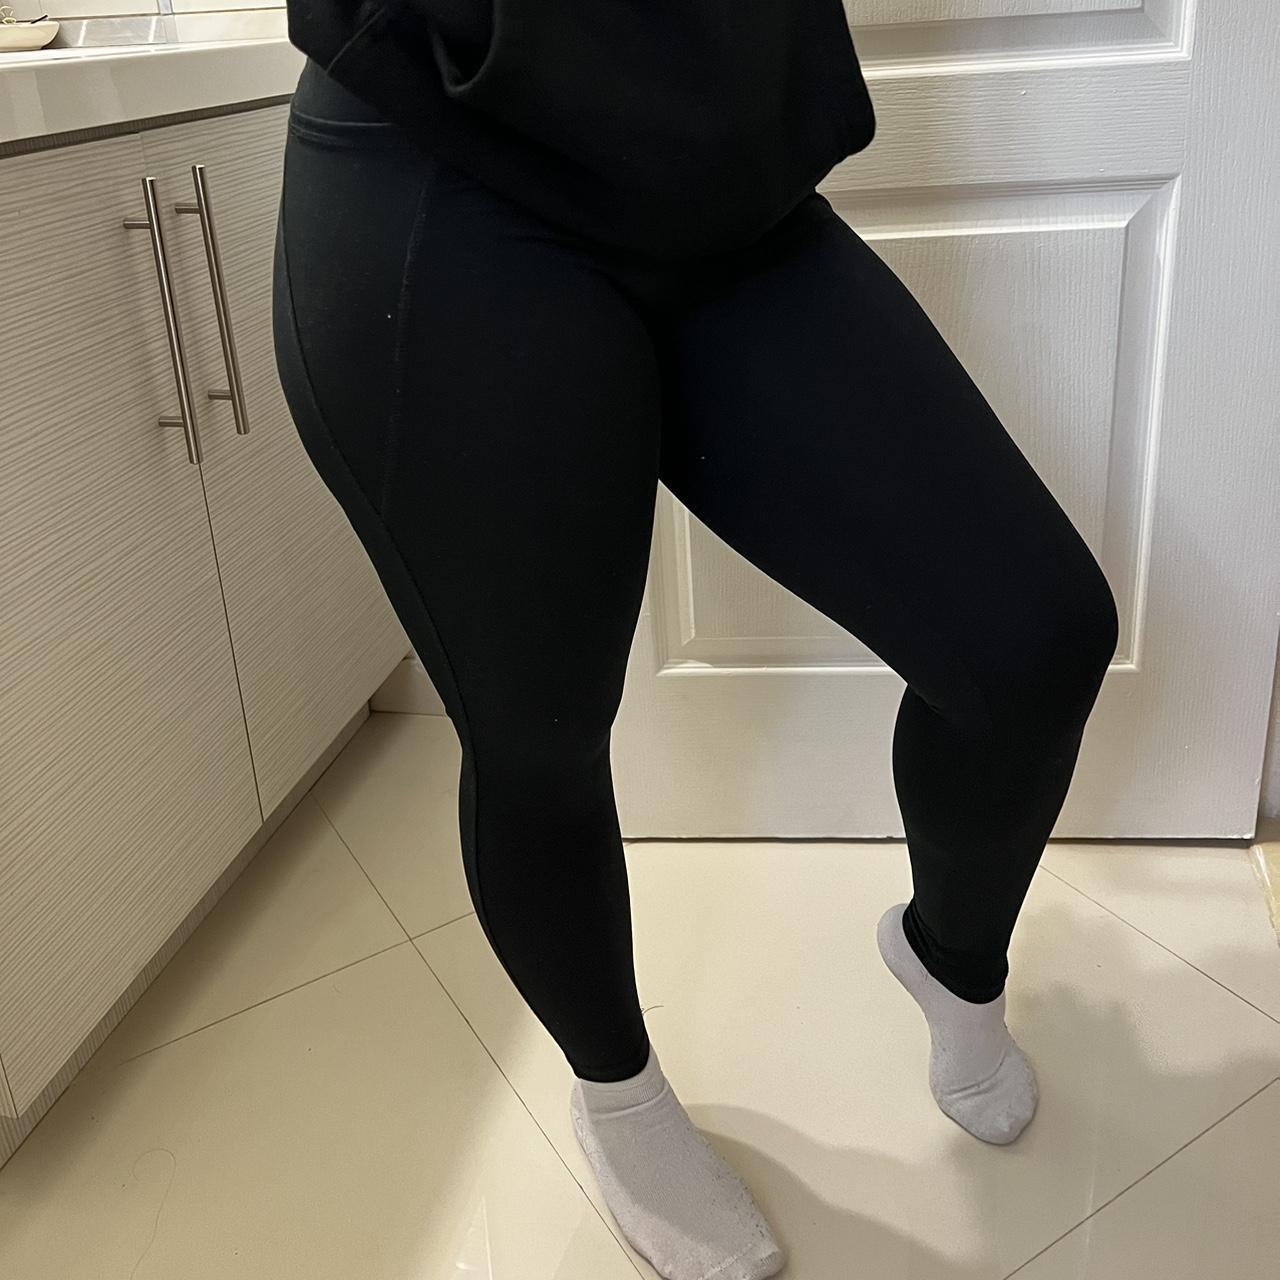 Sleek black athletic leggings/yoga pants from 90 - Depop